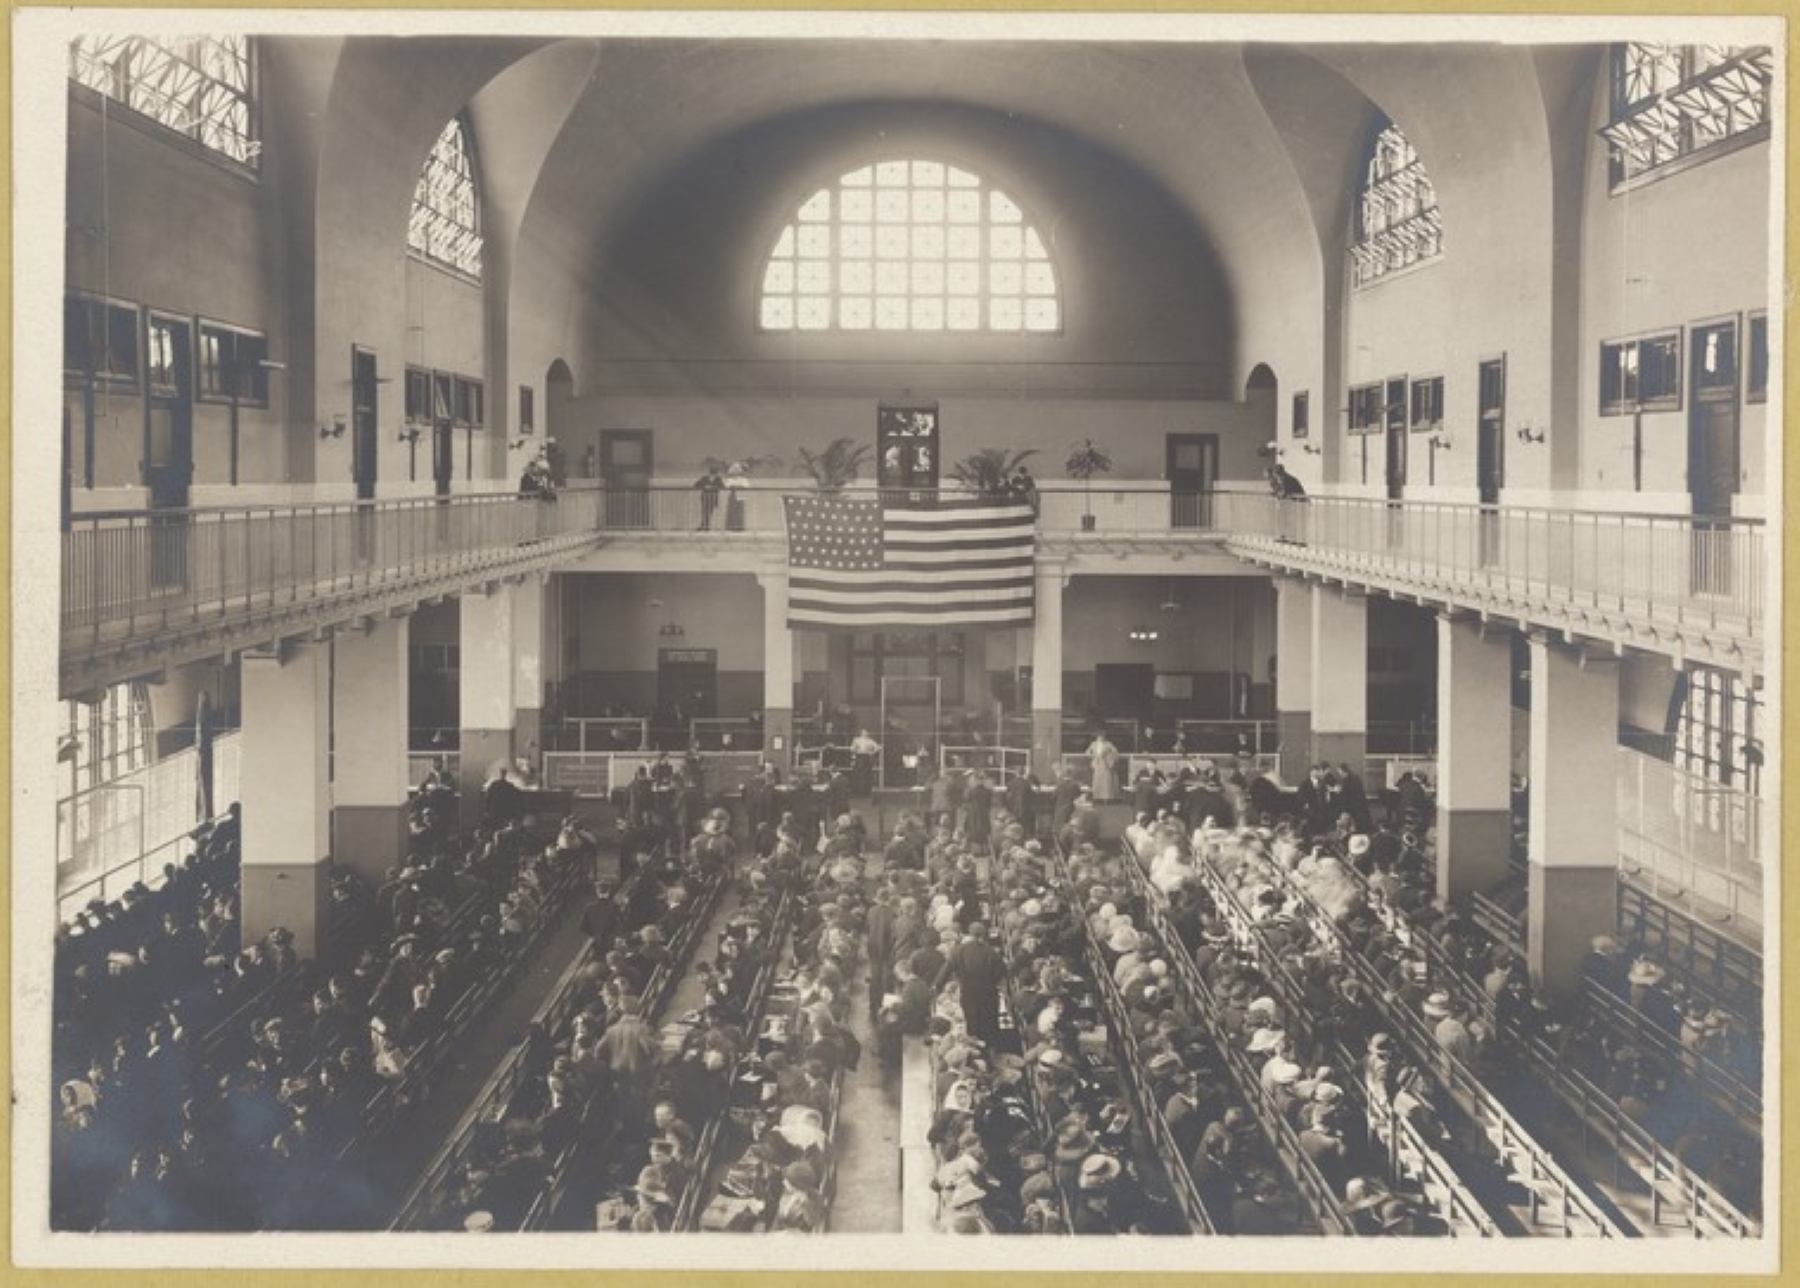 Grupa ludzi siedzi w sali wykładowej. Na górze wisi flaga USA. Zdjęcie archiwalne.